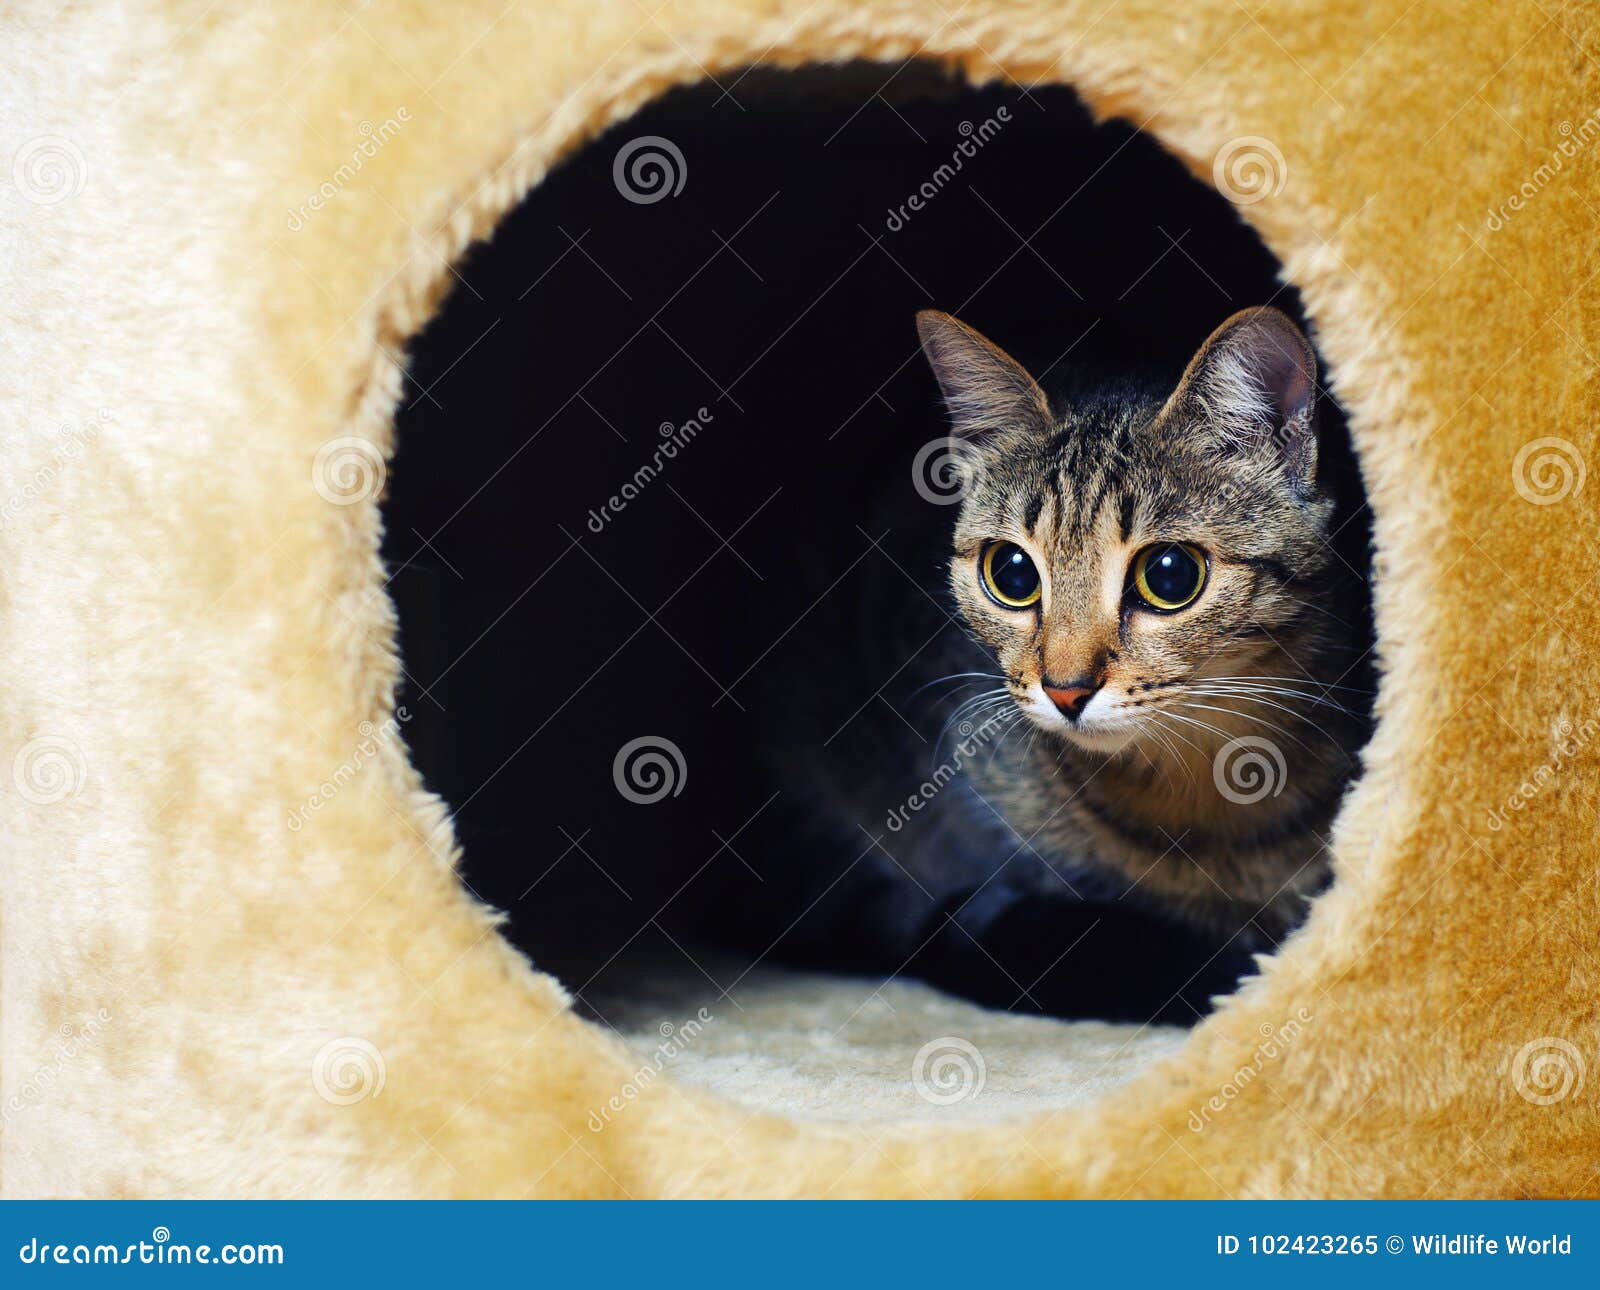 偷看在墙壁的一个孔外面的猫 库存图片. 图片 包括有 前面, 框架, 一个, 枪口, 查找, 头发, 蓬松 - 84471861